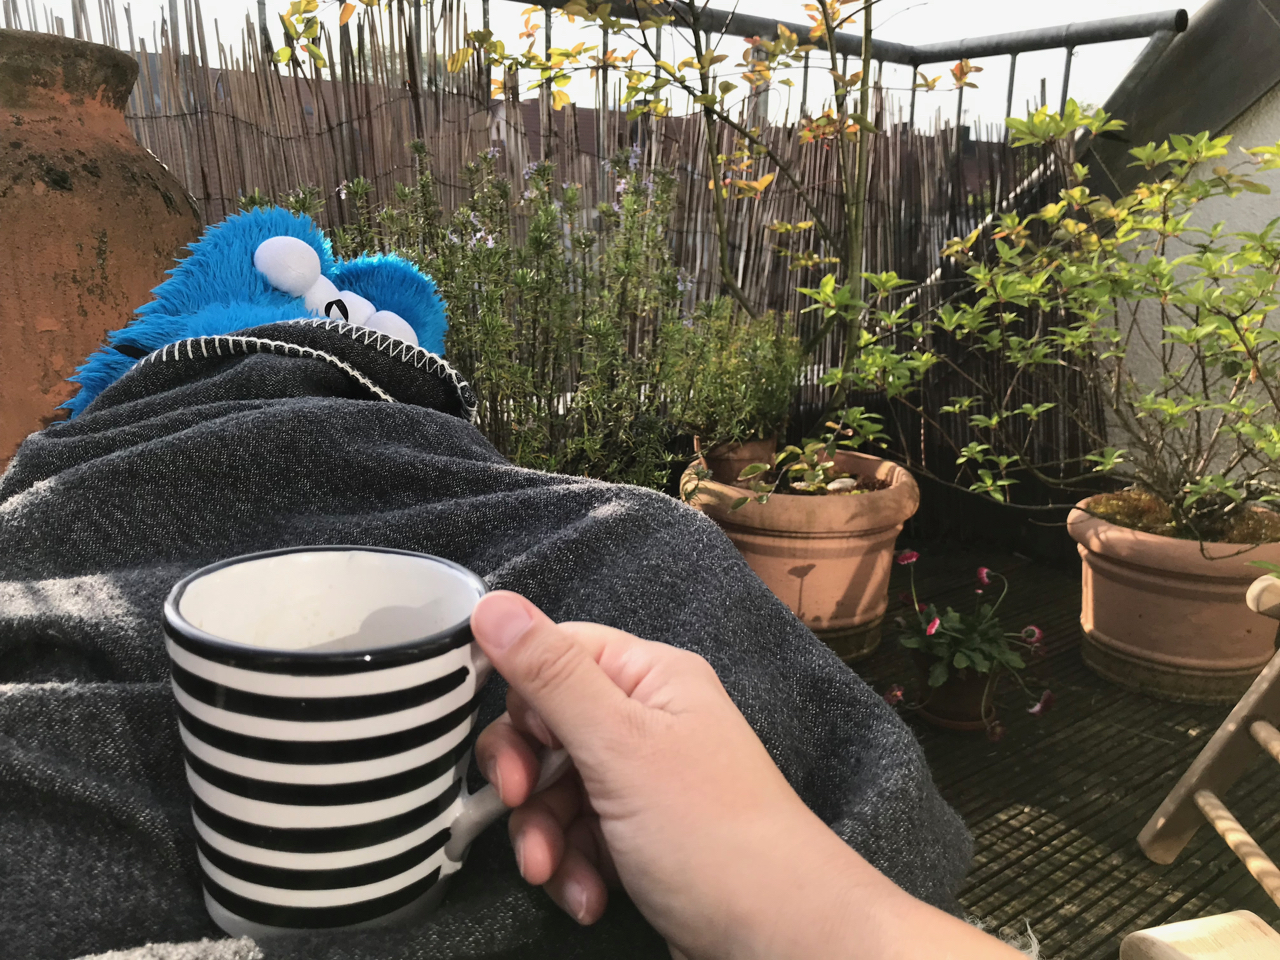 Kaffee auf der Terrasse